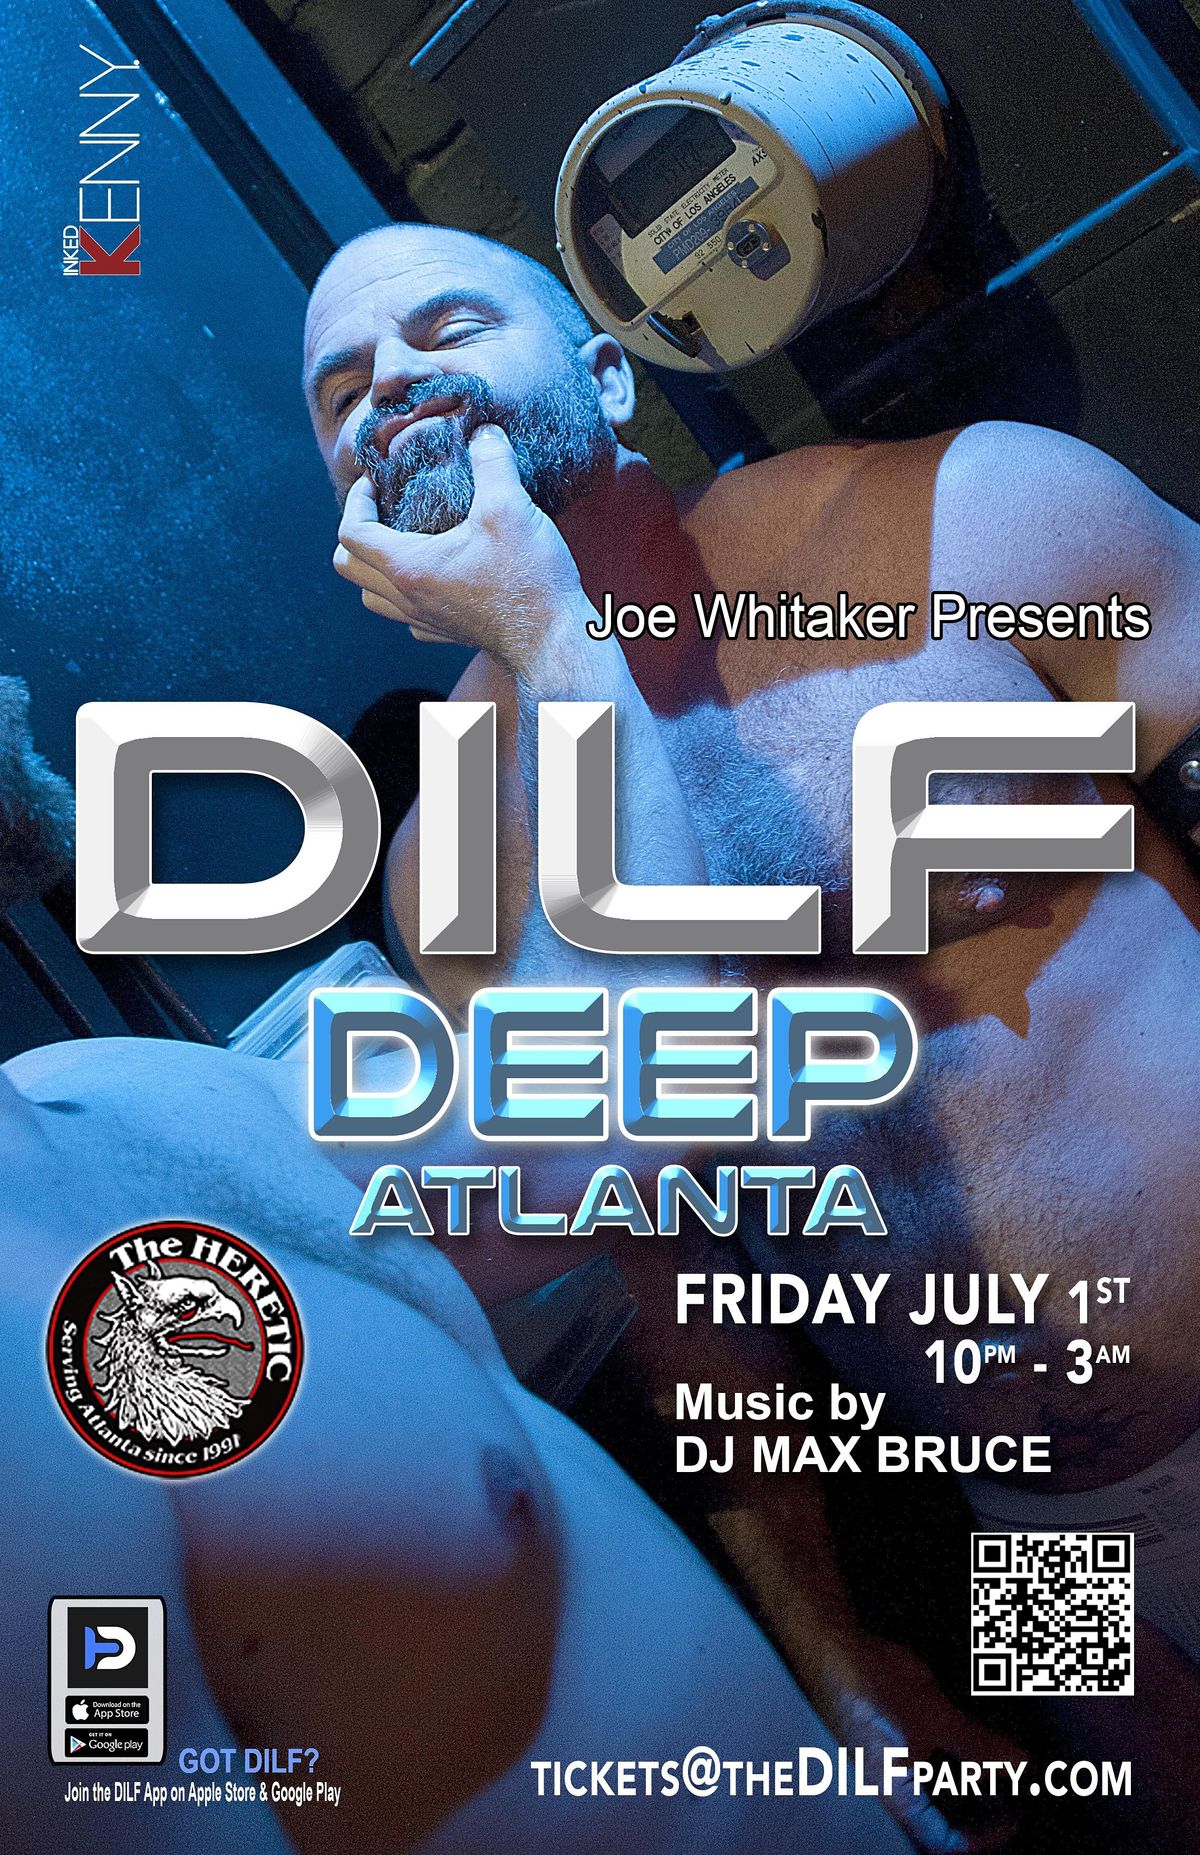 DILF Atlanta "DEEP" by Joe Whitaker Presents